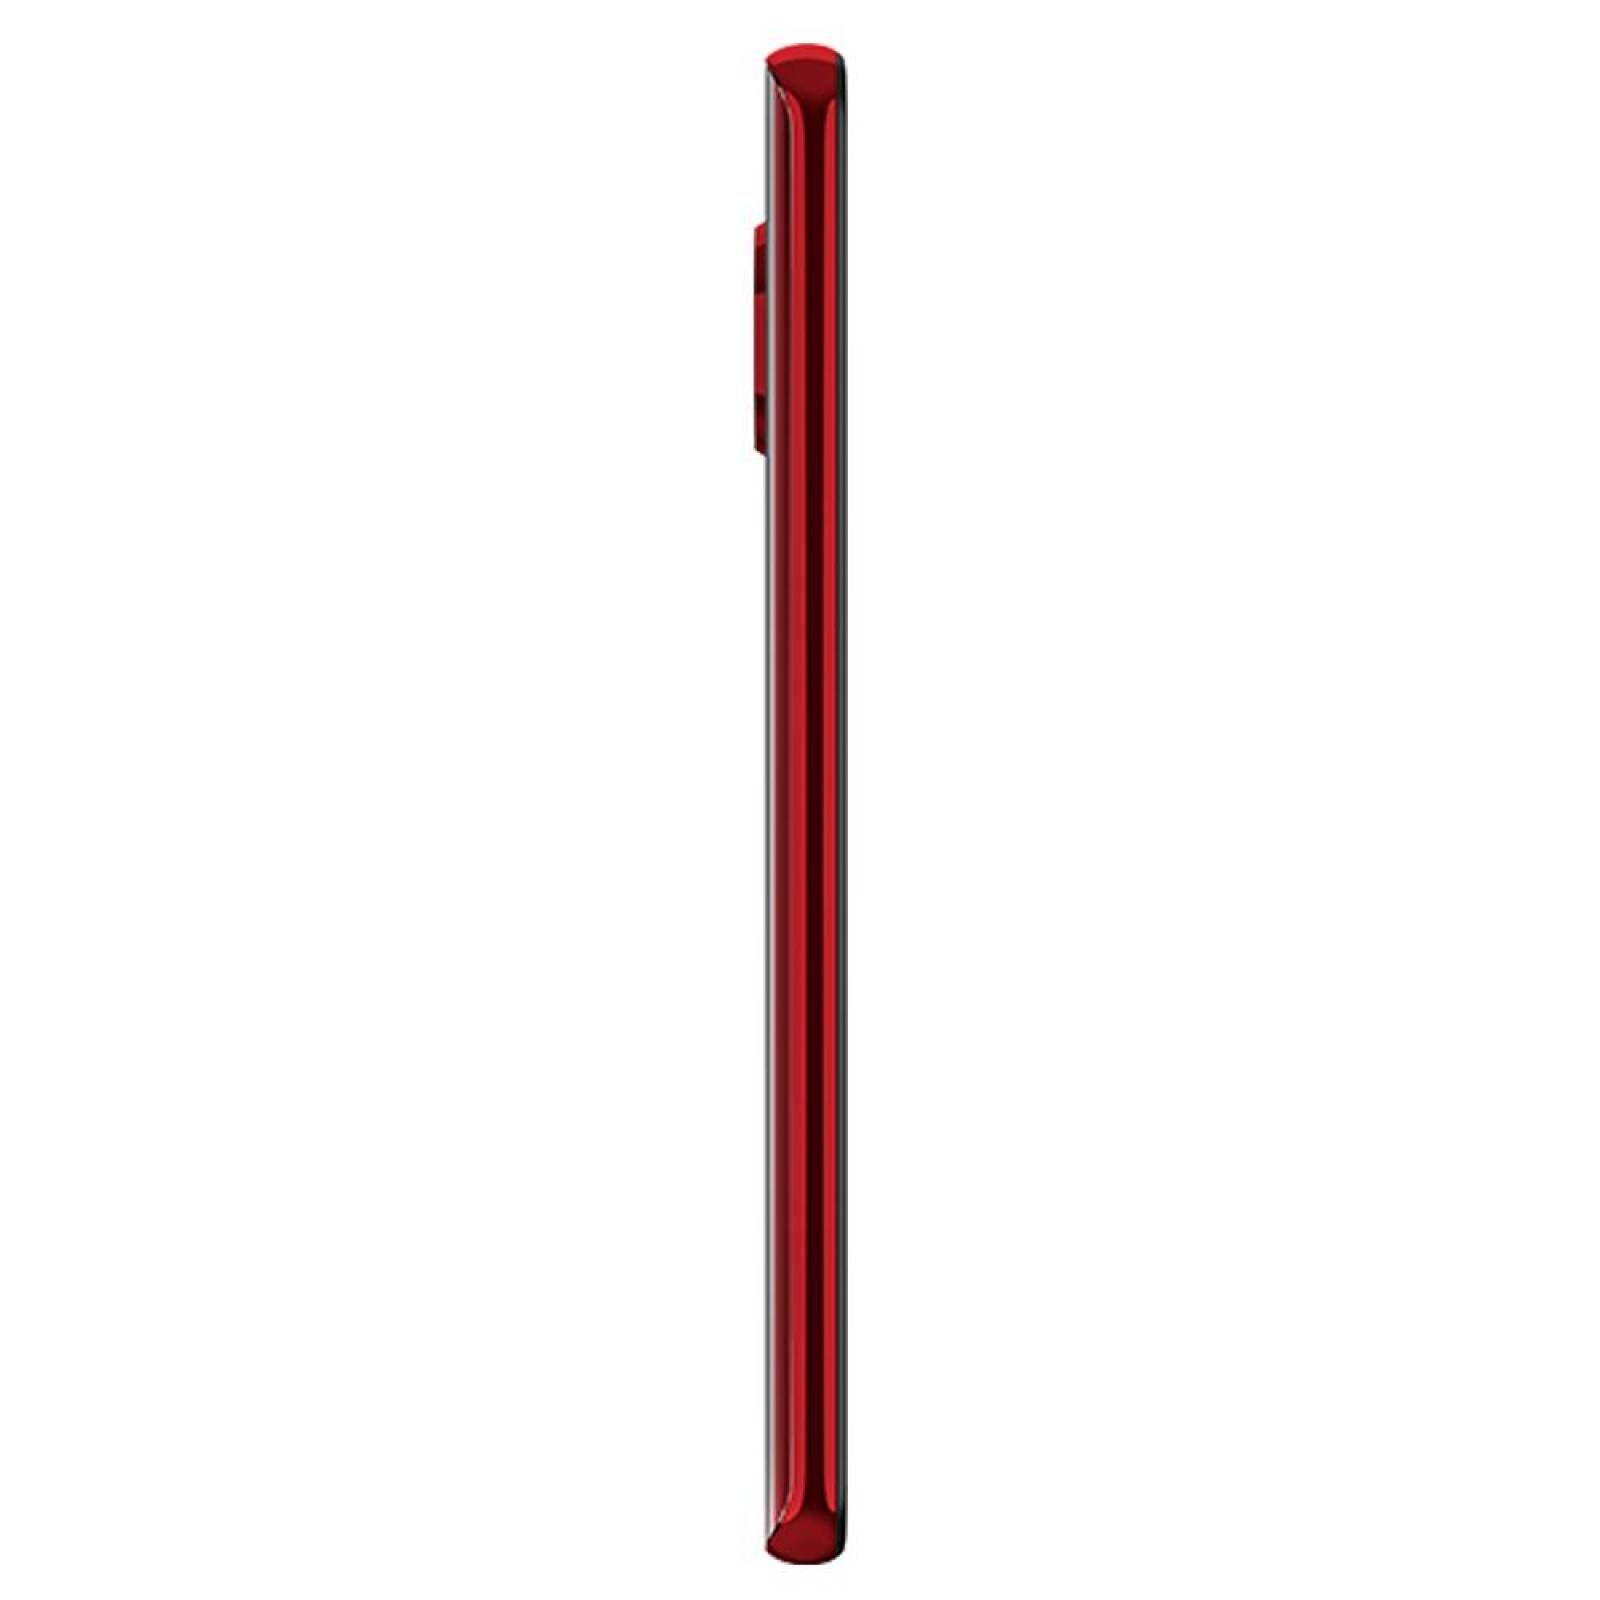 Smartphone Motorola Moto G8 Plus 64 Gb Rojo Desbloqueado 